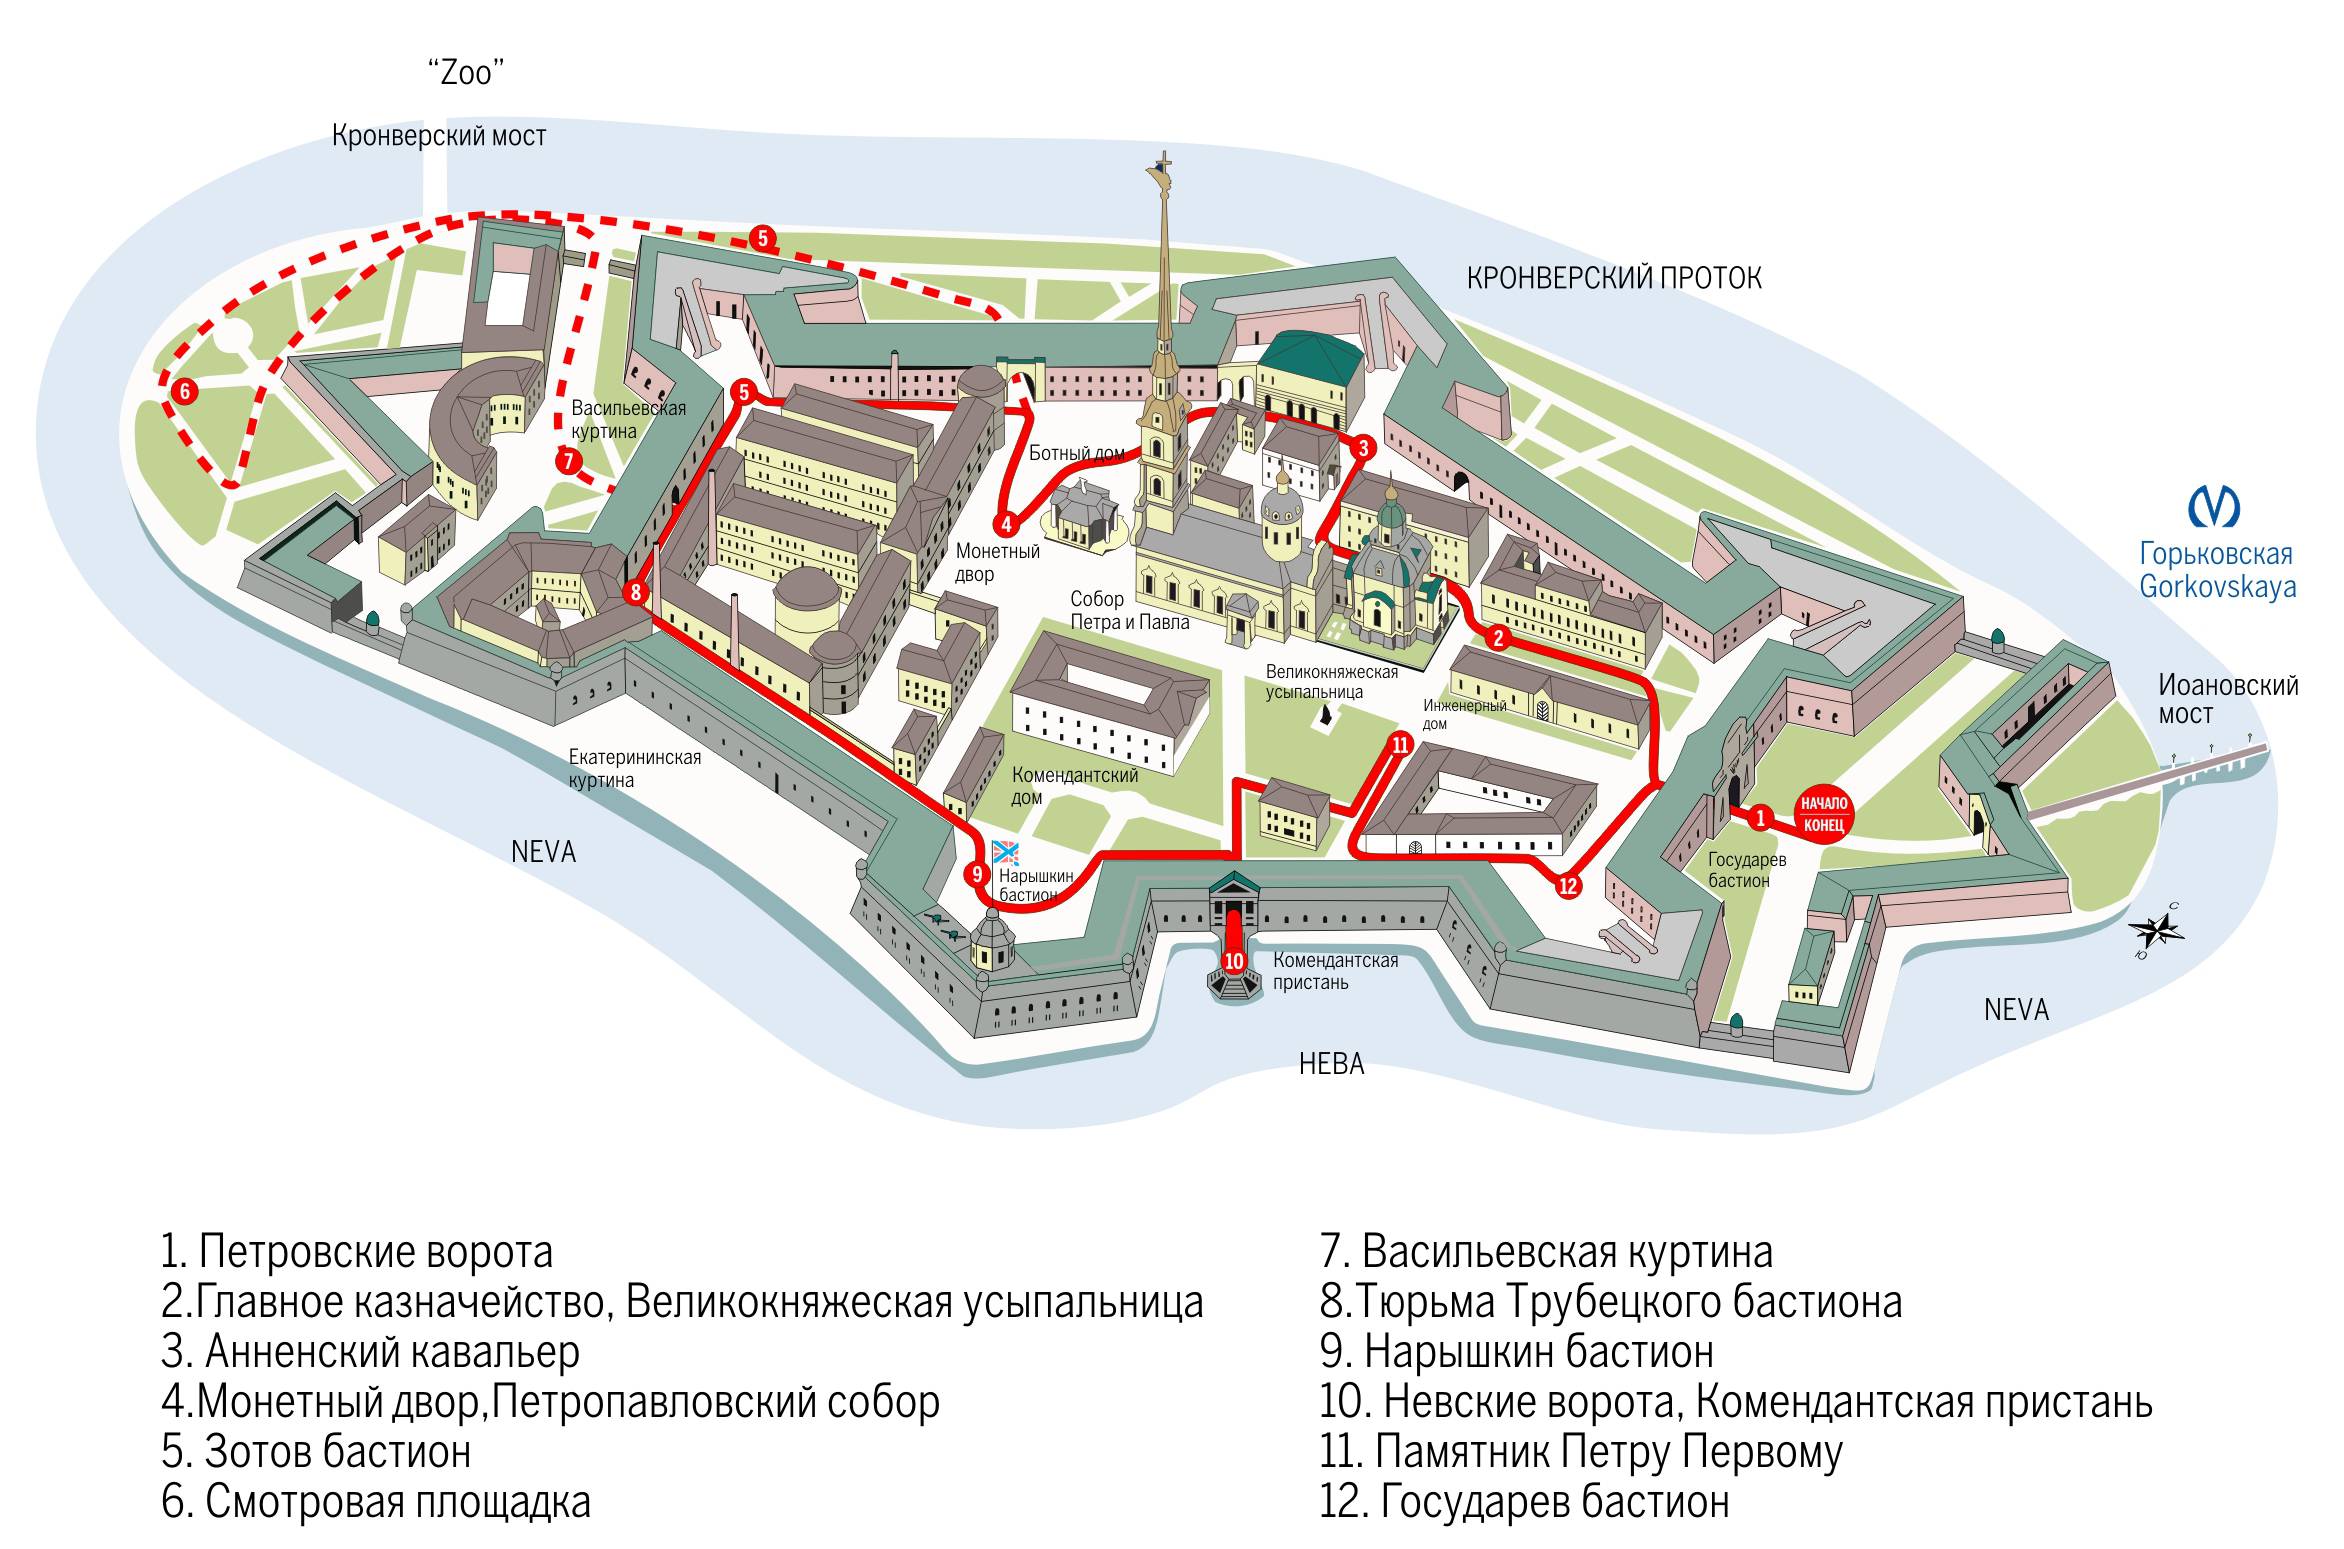 Схема Петропавловской крепости в Санкт-Петербурге